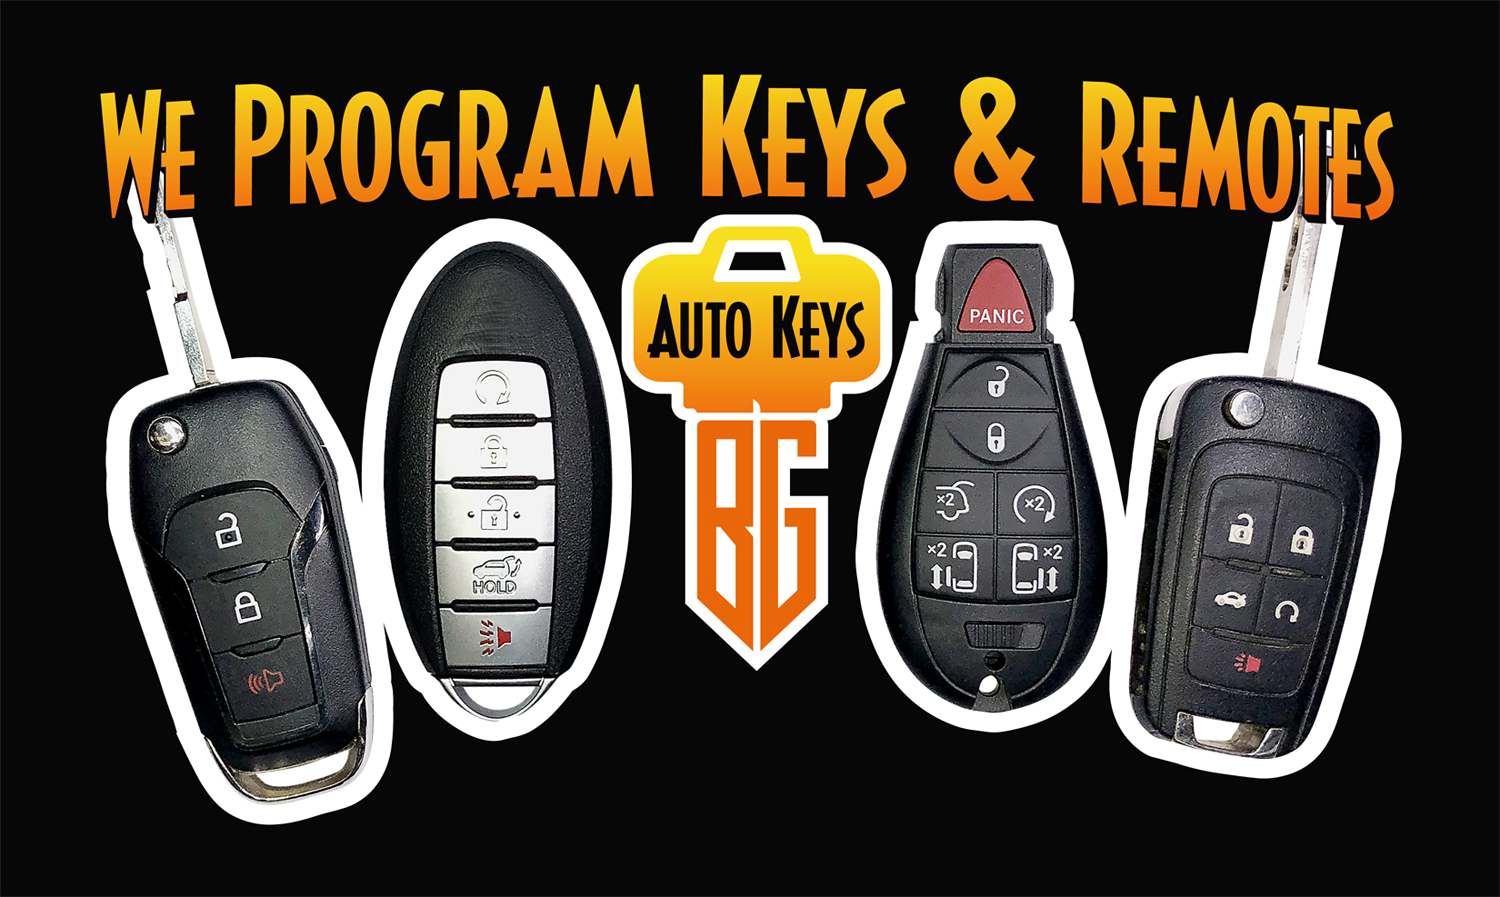 BG Auto Keys Programs Keys